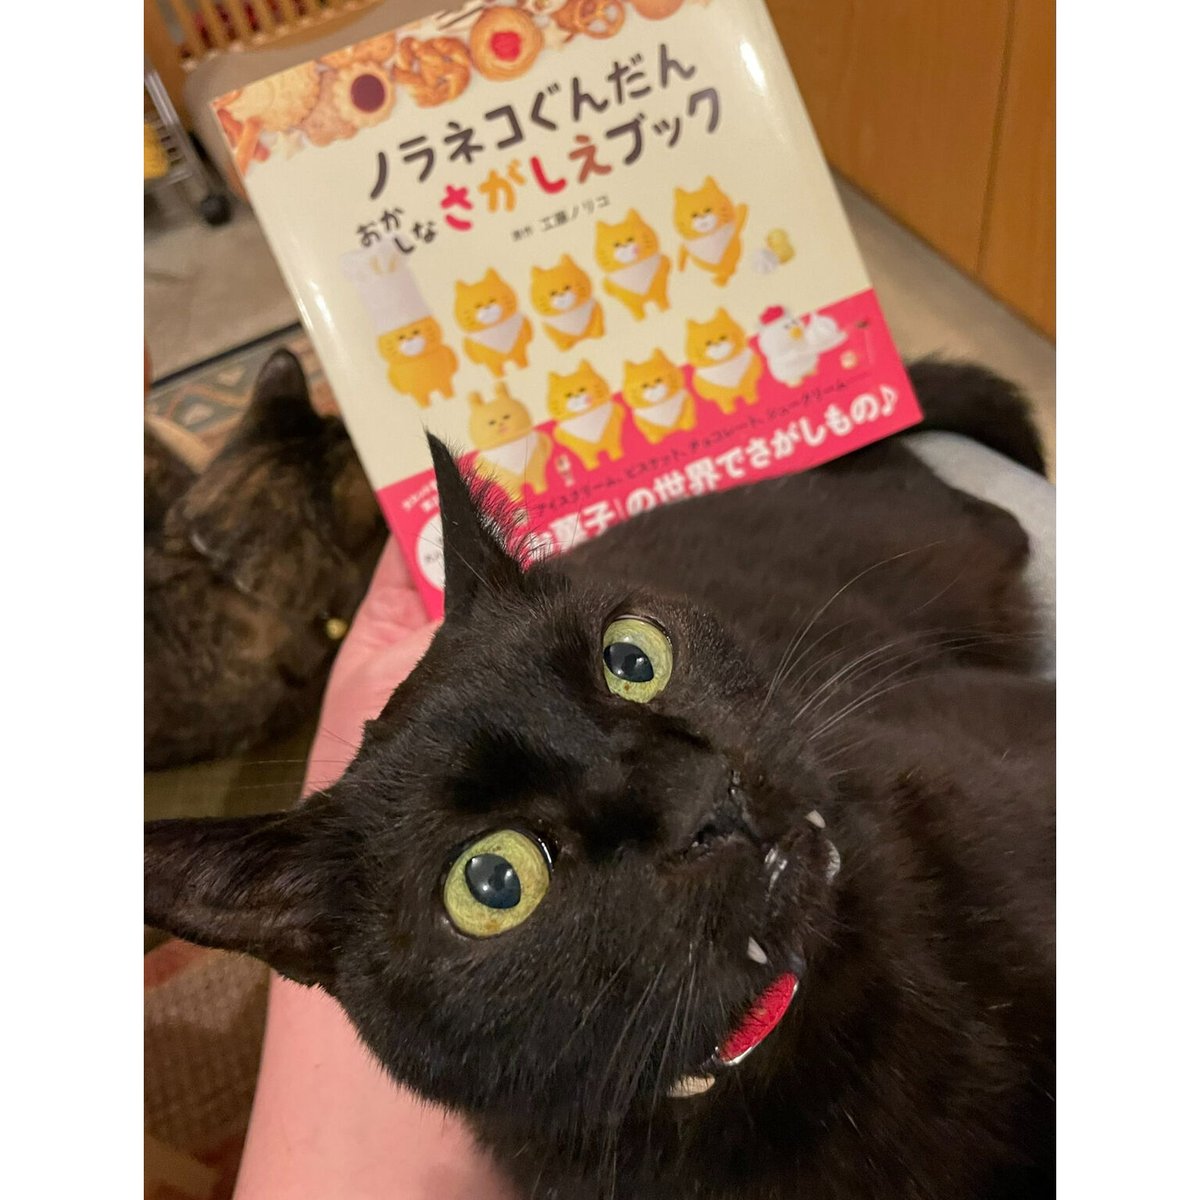 ノラネコぐんだん おかしなさがしえブック | Cat's Meow Books Virtual...